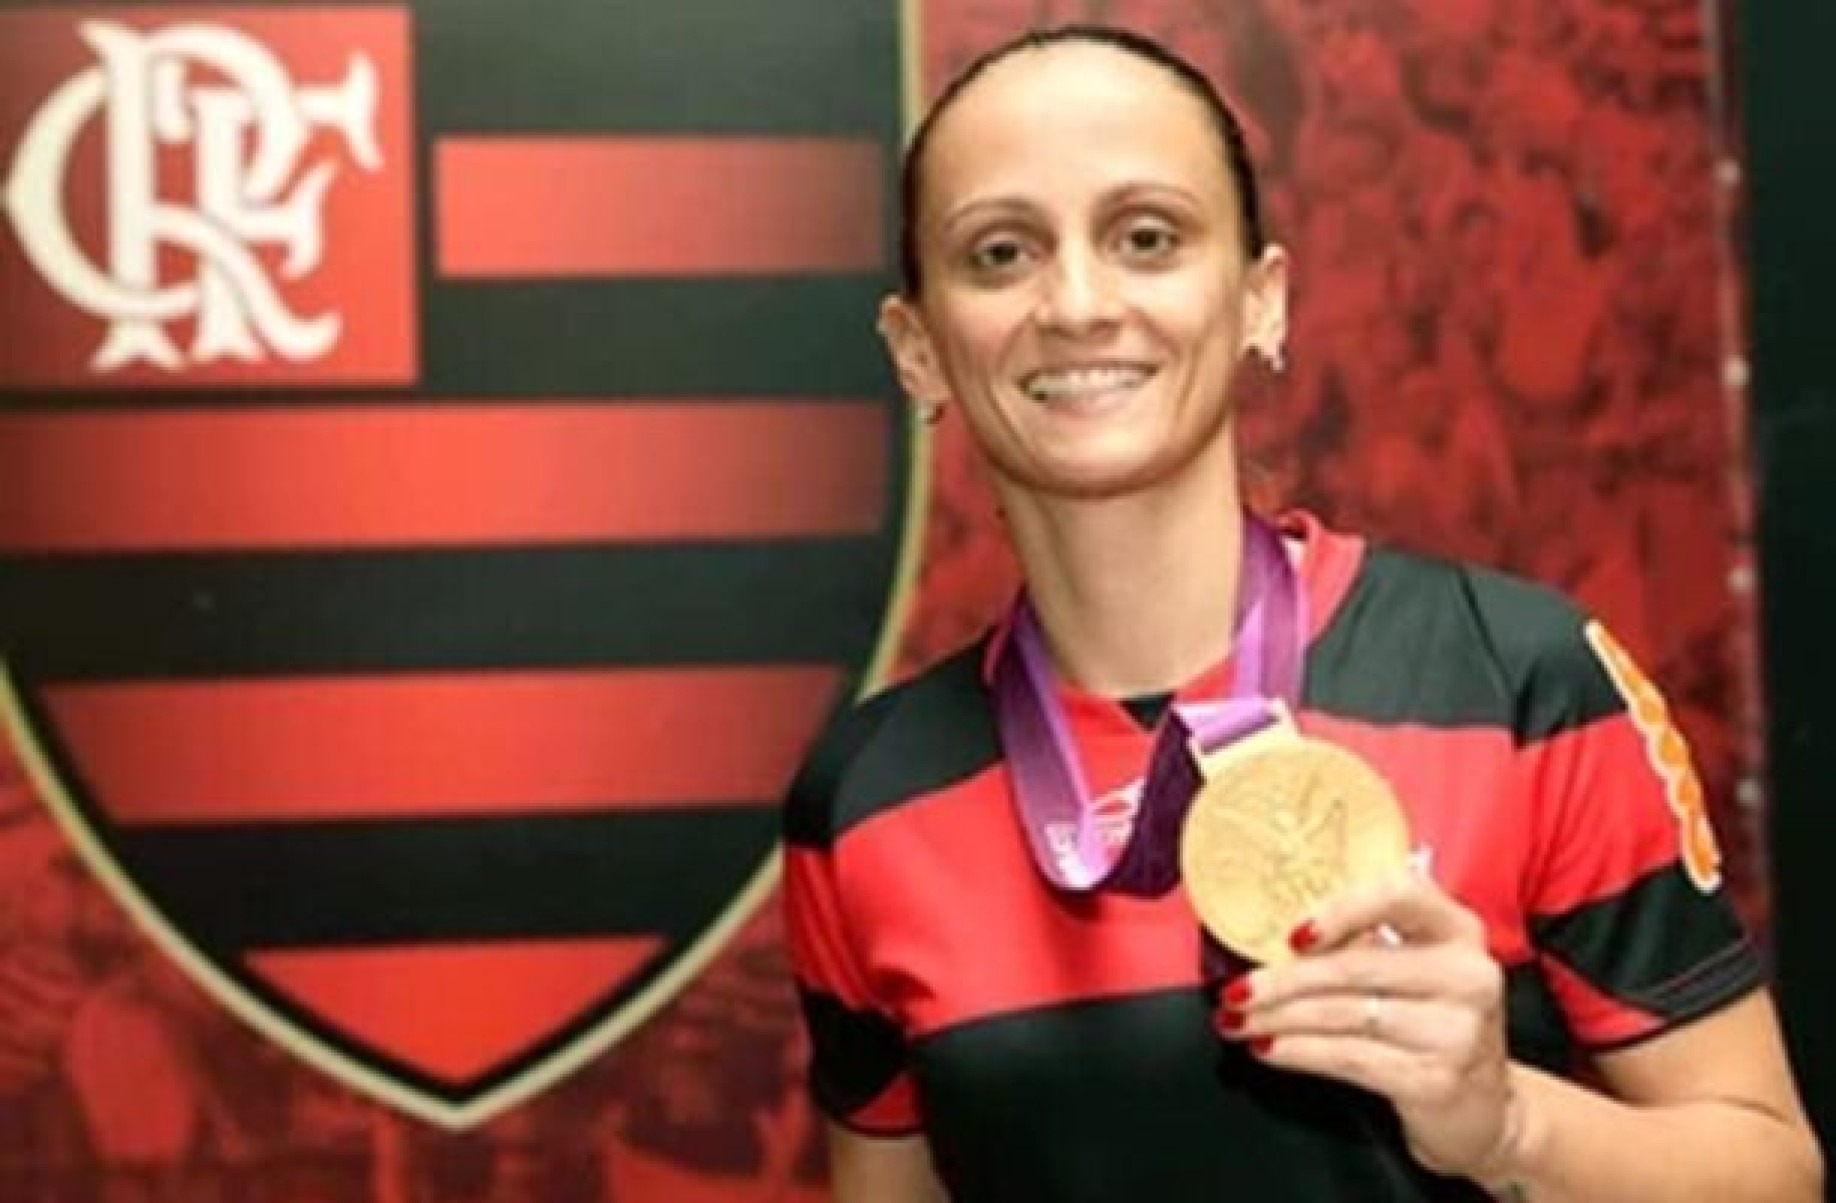 Bicampeã olímpica, Fabi celebra novo estádio do Flamengo: ‘A Nação merece’